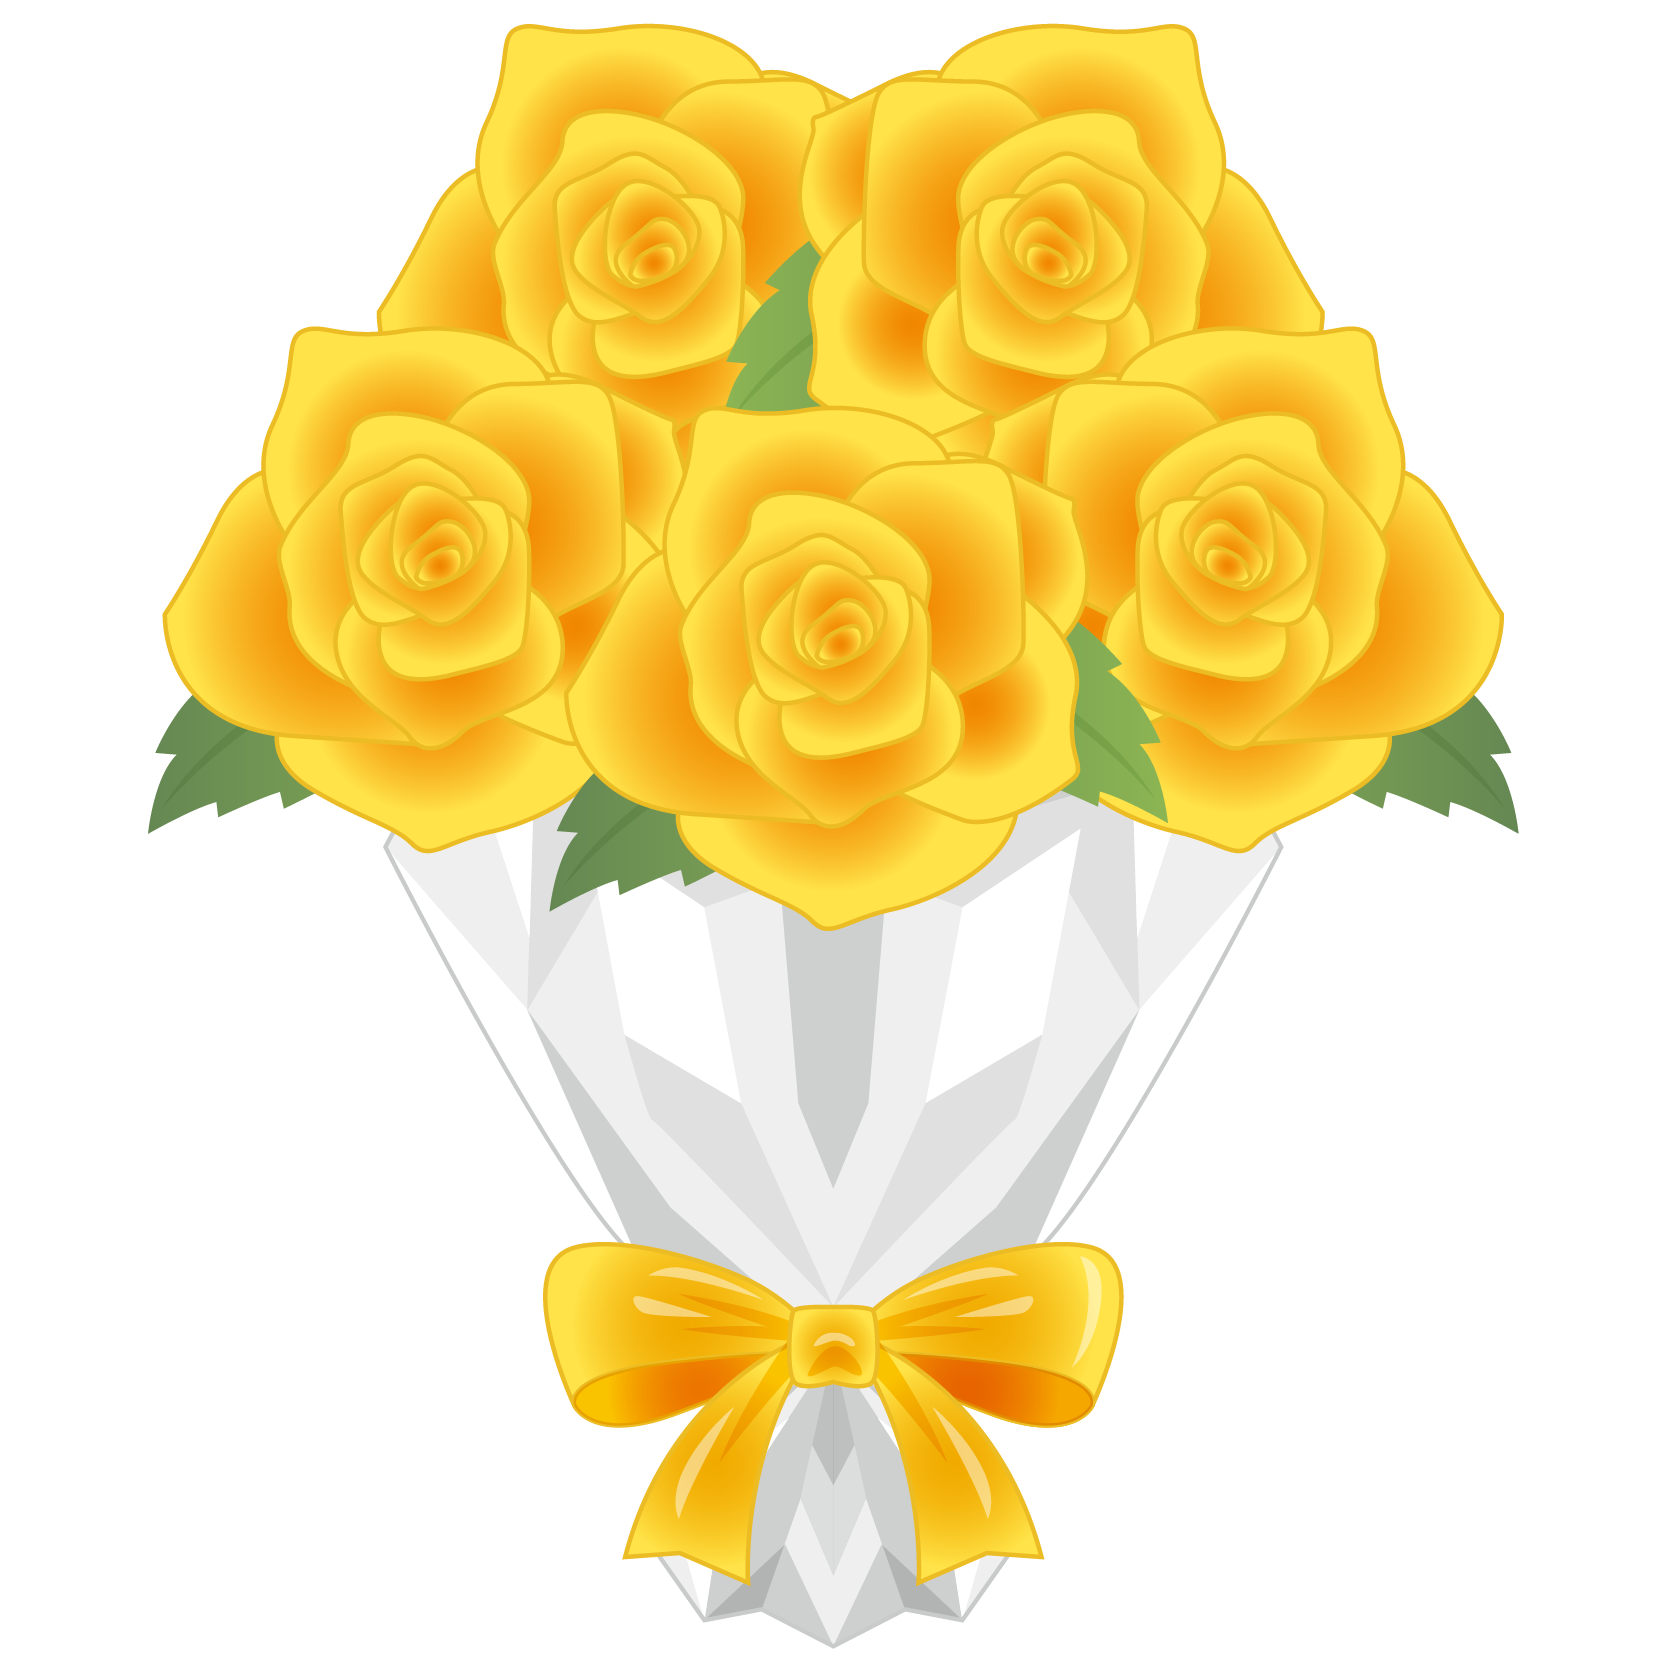 商用フリー 無料イラスト 黄色のバラの花束 Rose09 商用ok フリー素材集 ナイスなイラスト